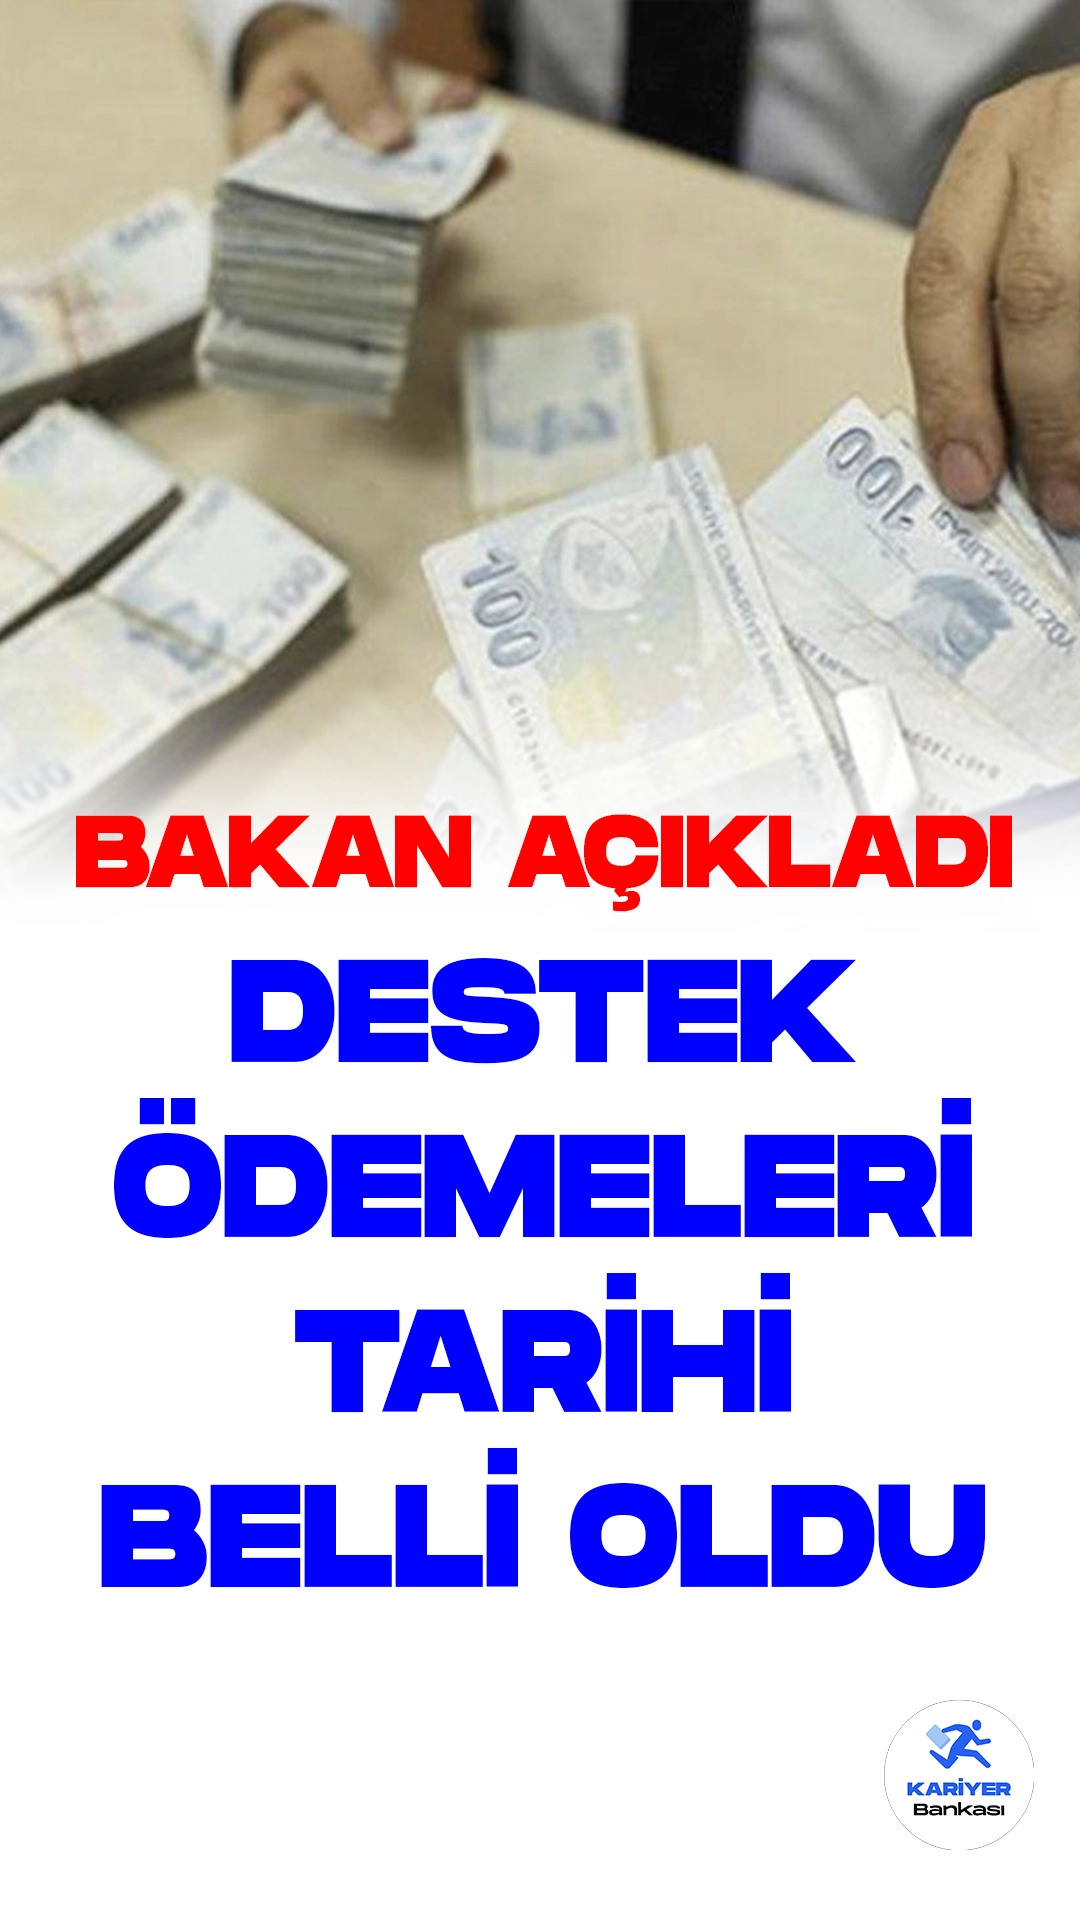 Aile Destek Ödemeleri 15 Ağustos'ta Başlayacak.Aile ve Sosyal Politikalar Bakanı Mahinur Özdemir Göktaş, Türkiye Aile Destek Programı kapsamında ödemelerin 15 Ağustos'ta hesaplara yatırılmaya başlayacağını duyurdu.